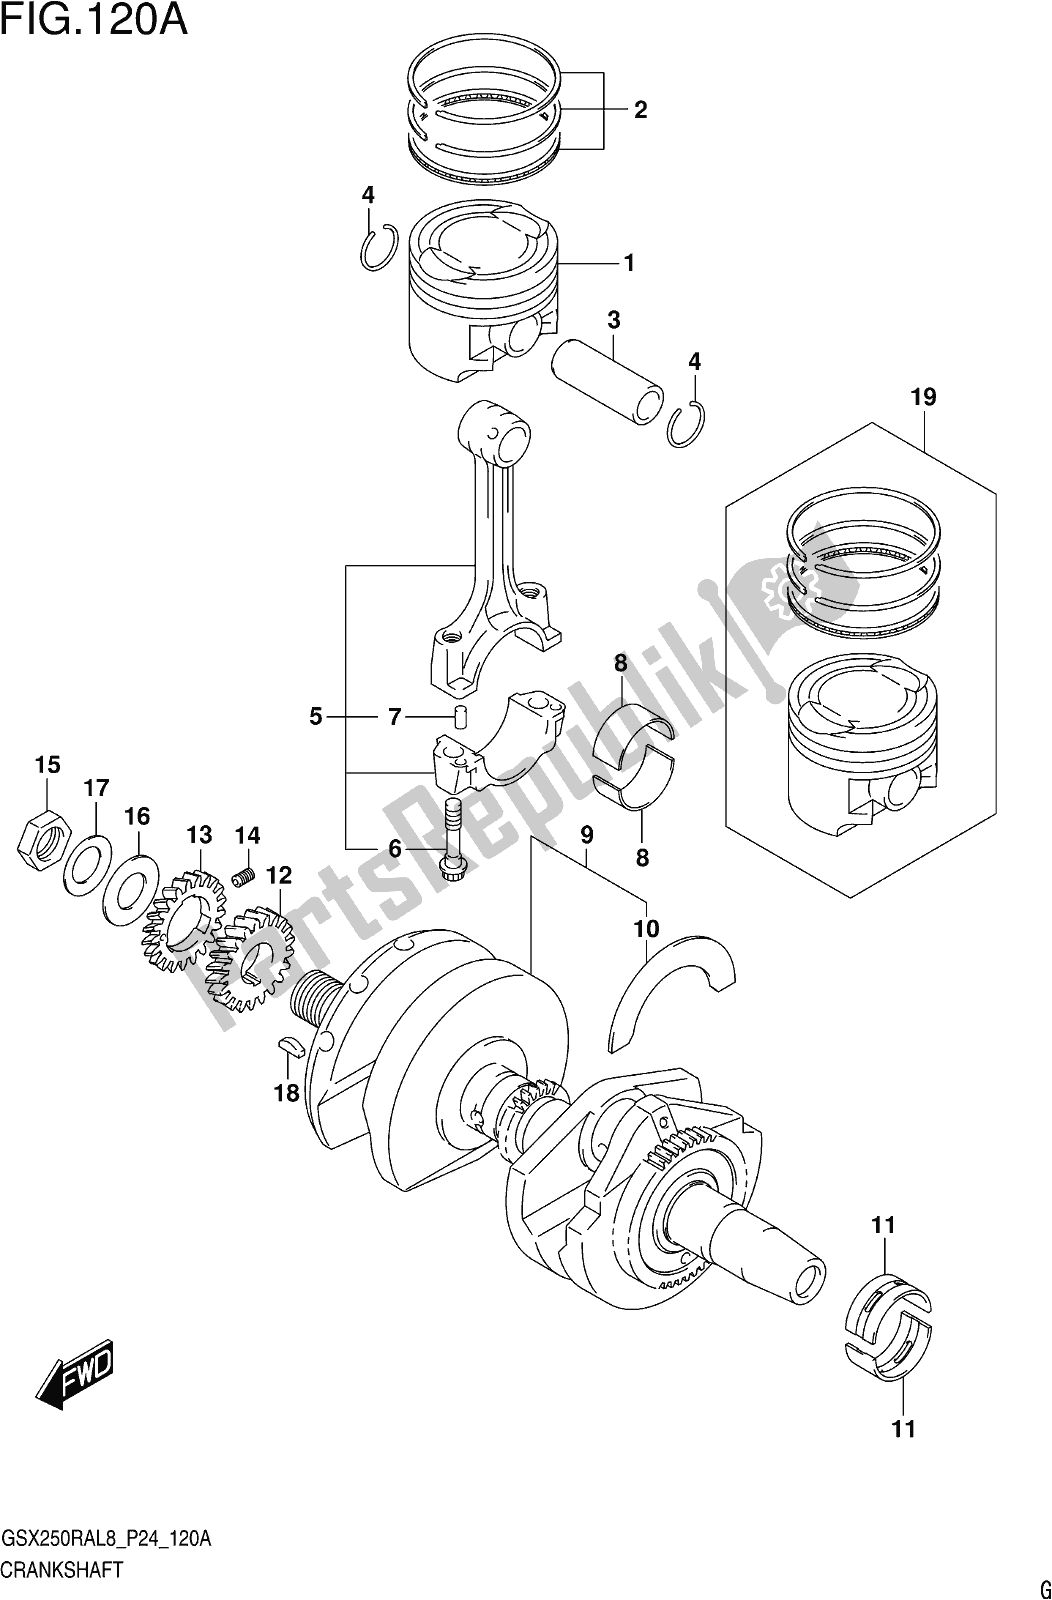 All parts for the Fig. 120a Crankshaft of the Suzuki GW 250 RAZ 2018